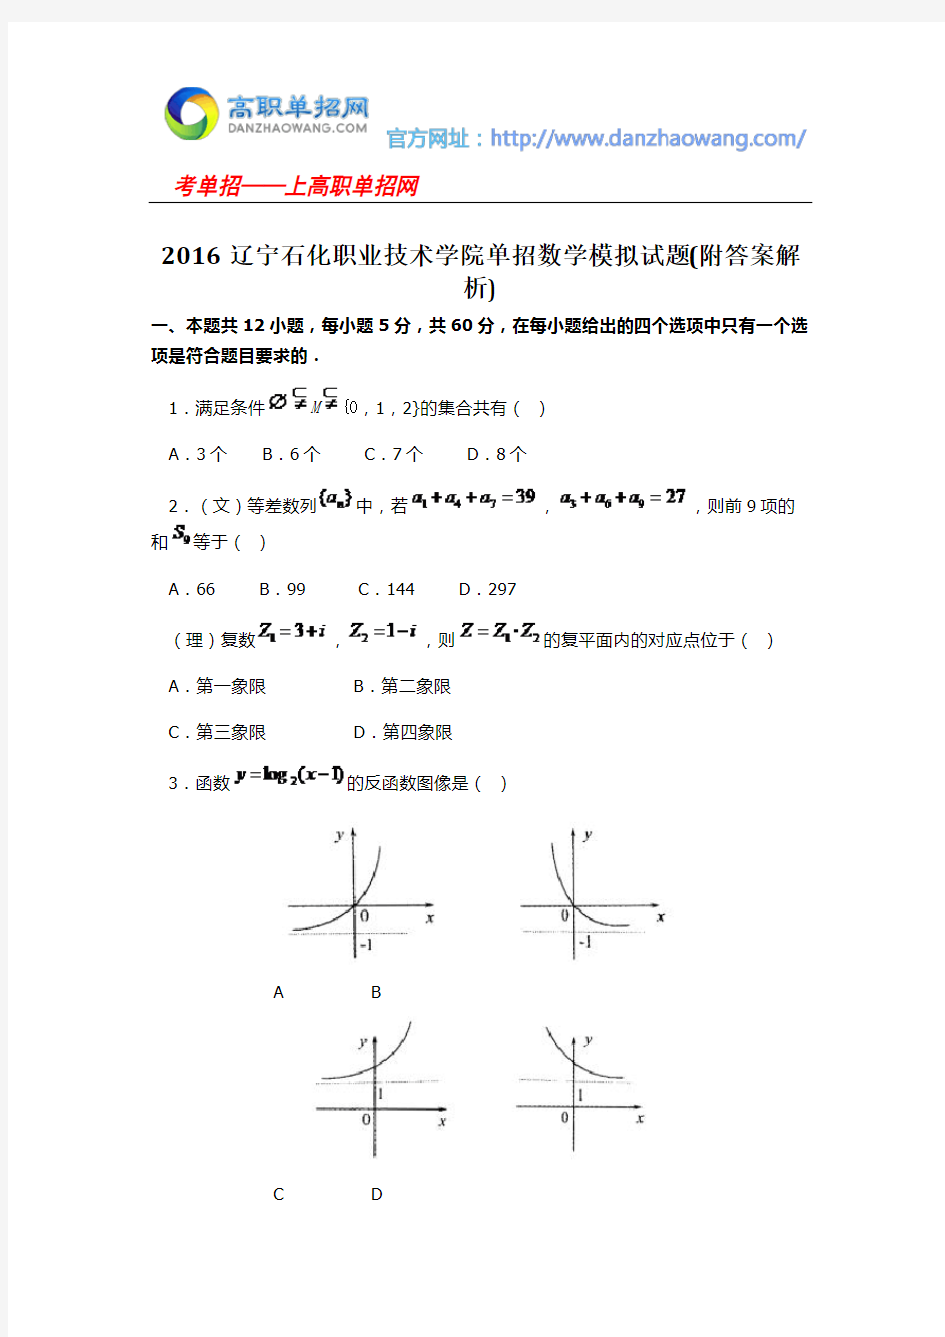 2016辽宁石化职业技术学院单招数学模拟试题(附答案解析)